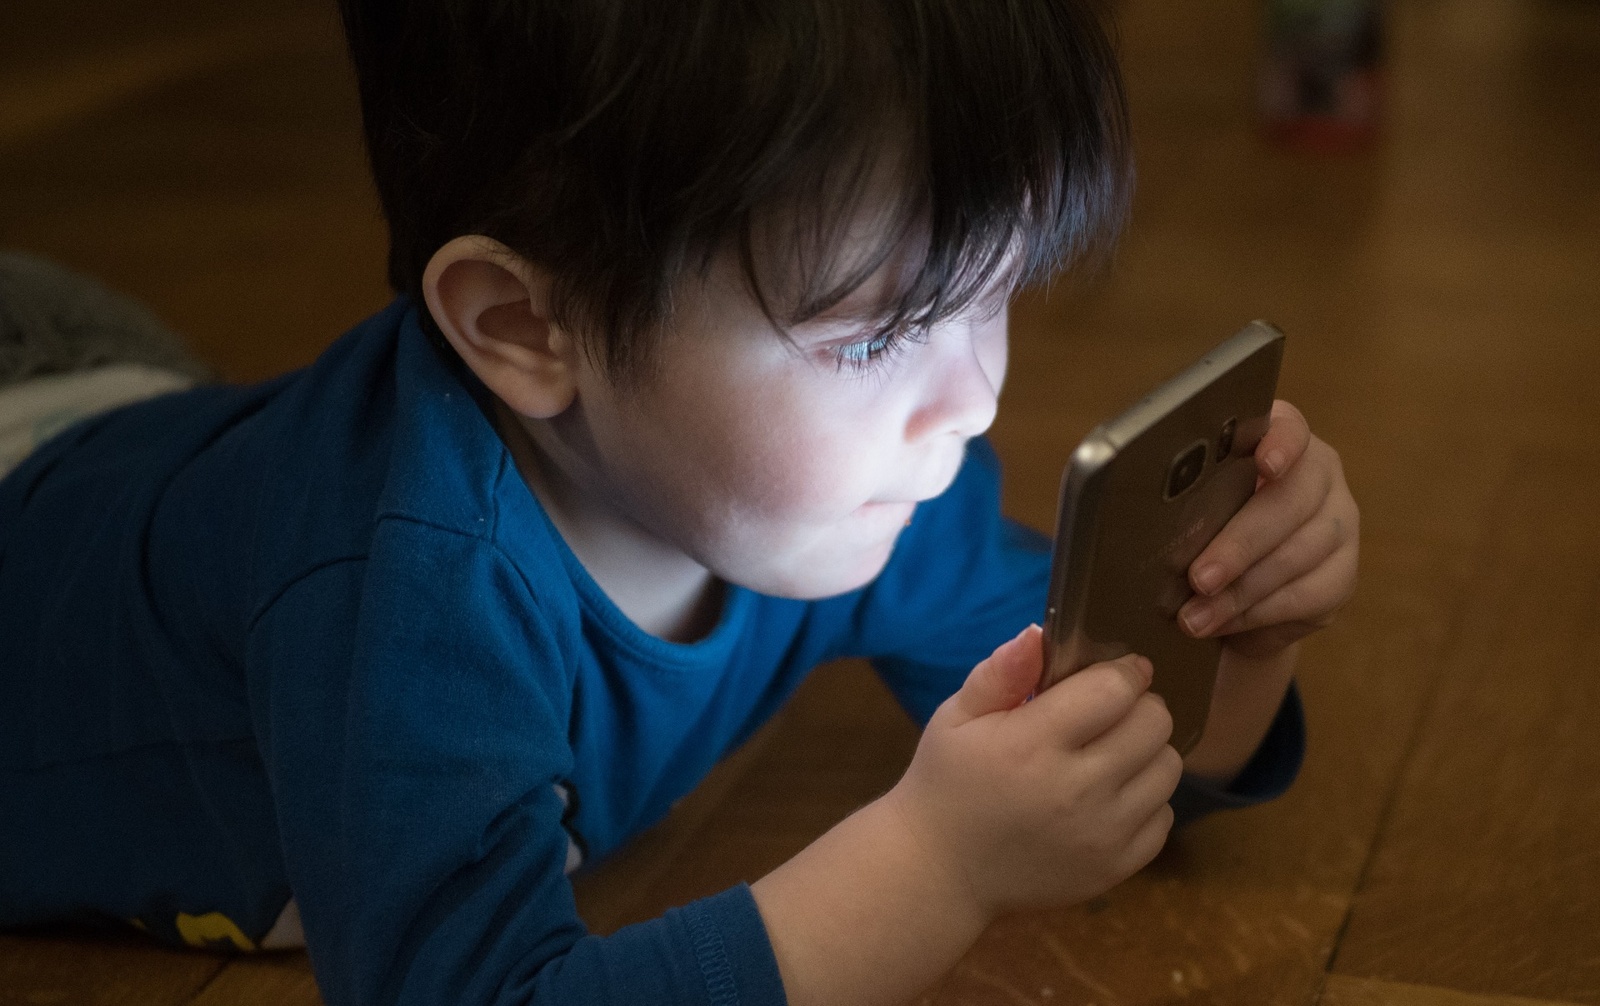 Ecco quanto è dannoso dare lo smartphone ai bambini per calmarli